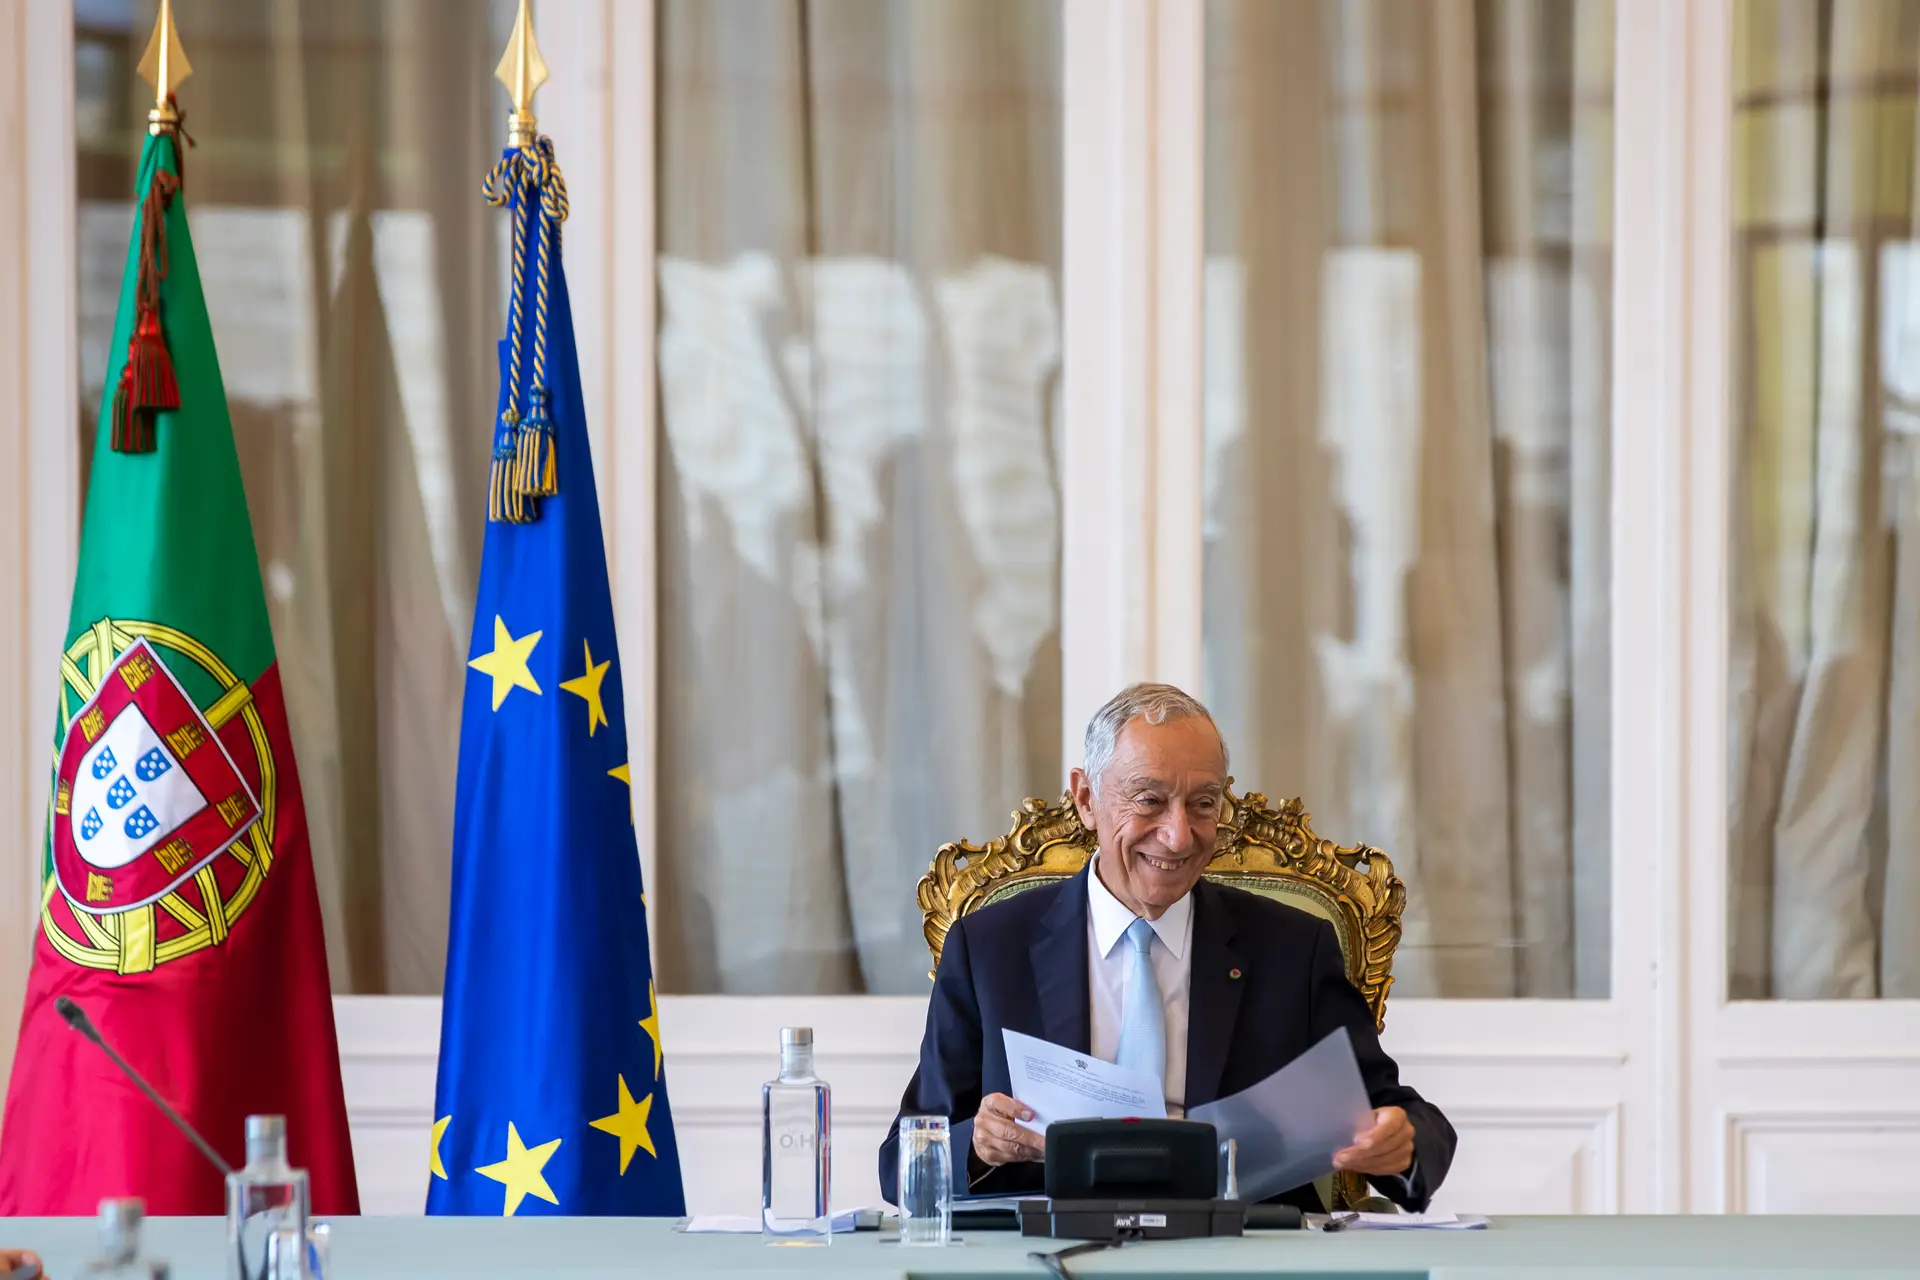 Conselho de Estado analisou alargamento e "inevitável conexão" com reformas na UE